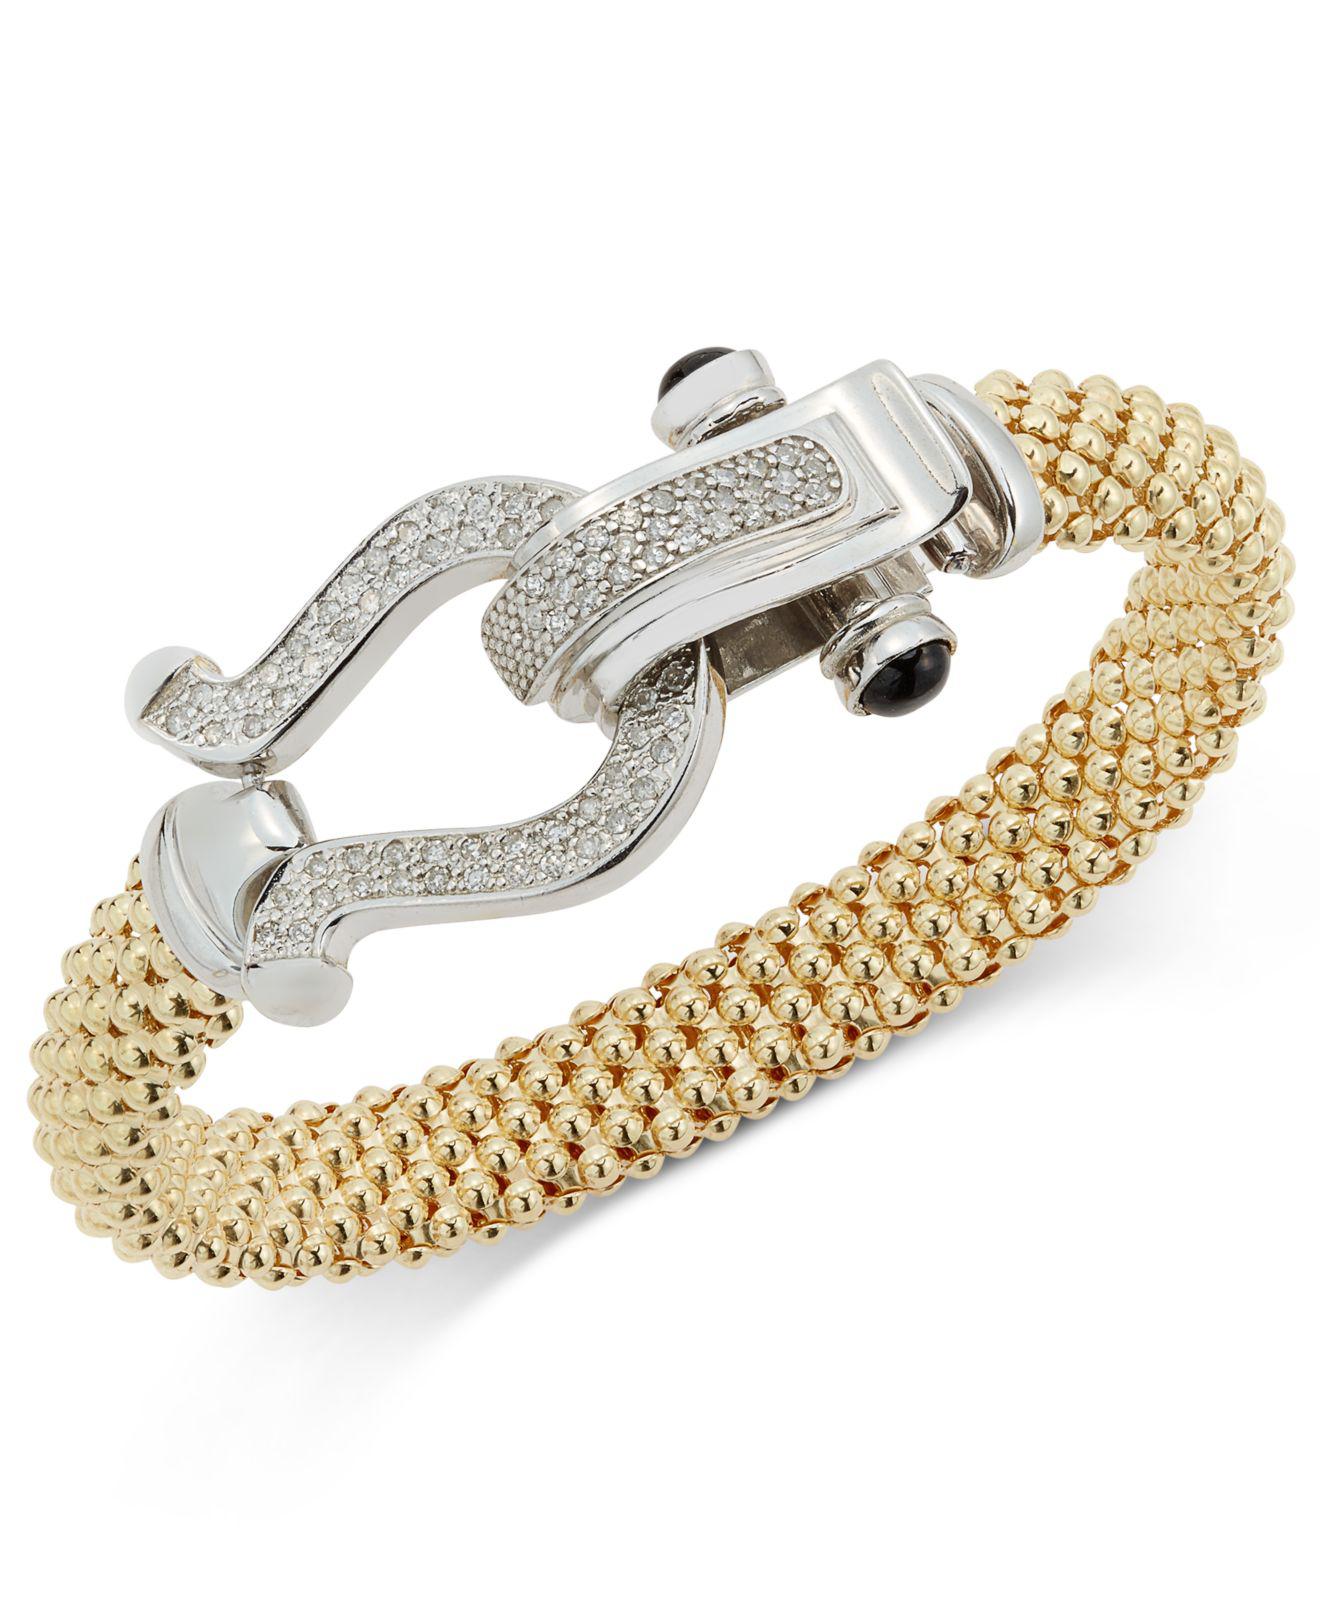 Sterling Silver Bracelets Men's Jewelry & Accessories - Macy's